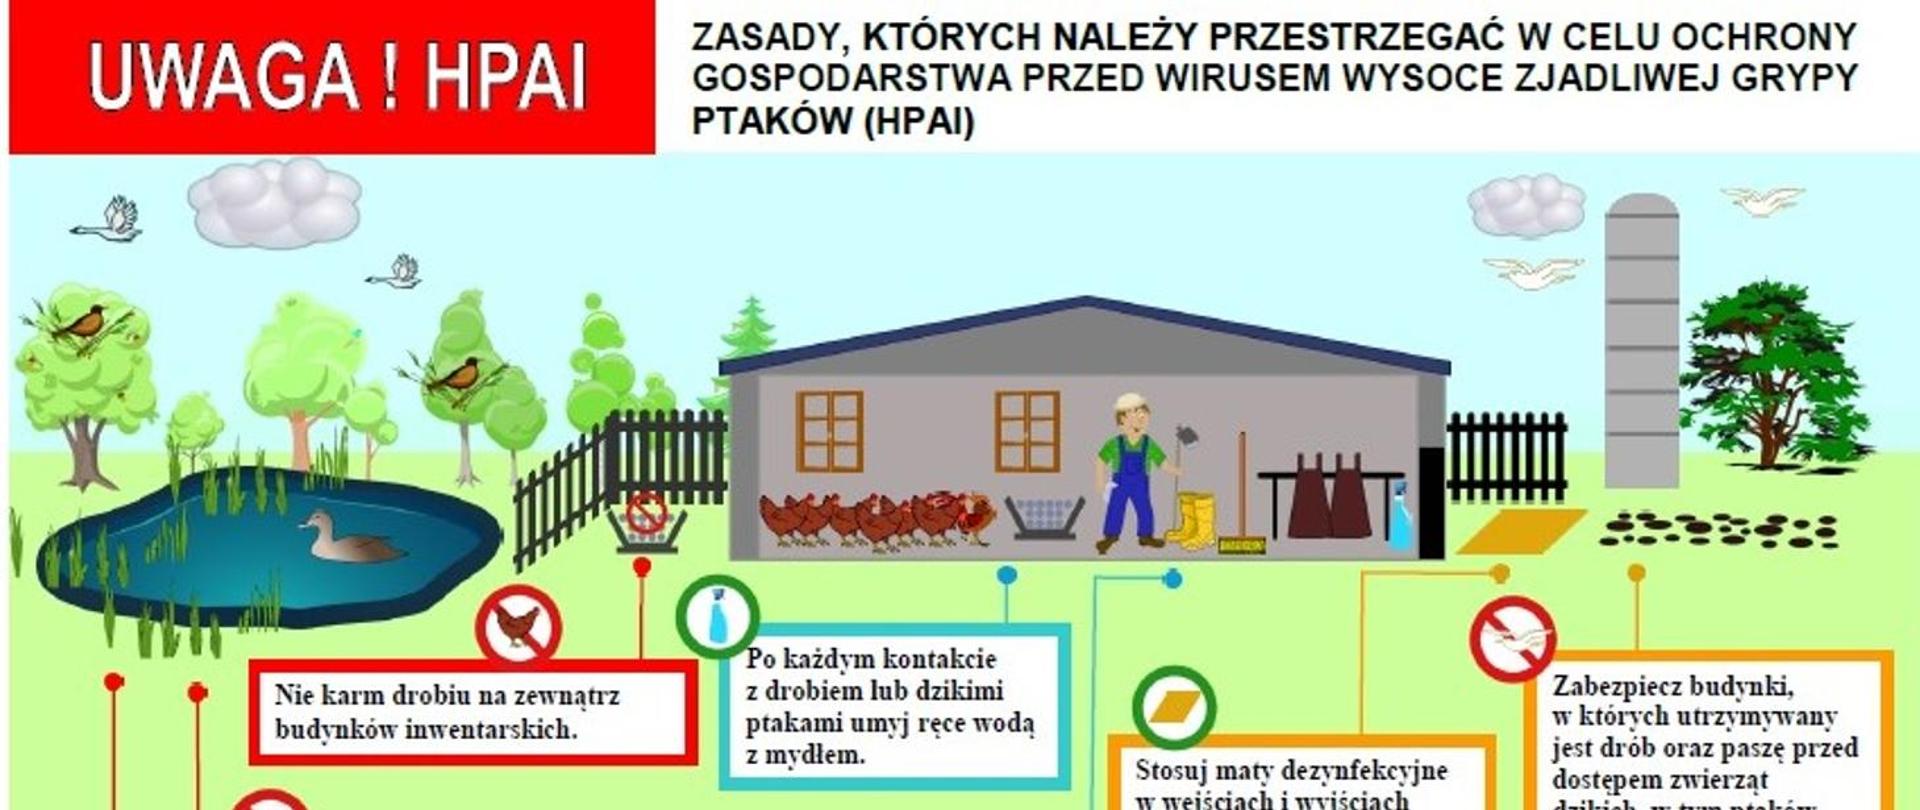 Zjadliwa grypa ptaków (HPAI) na terenie województwa pomorskiego.